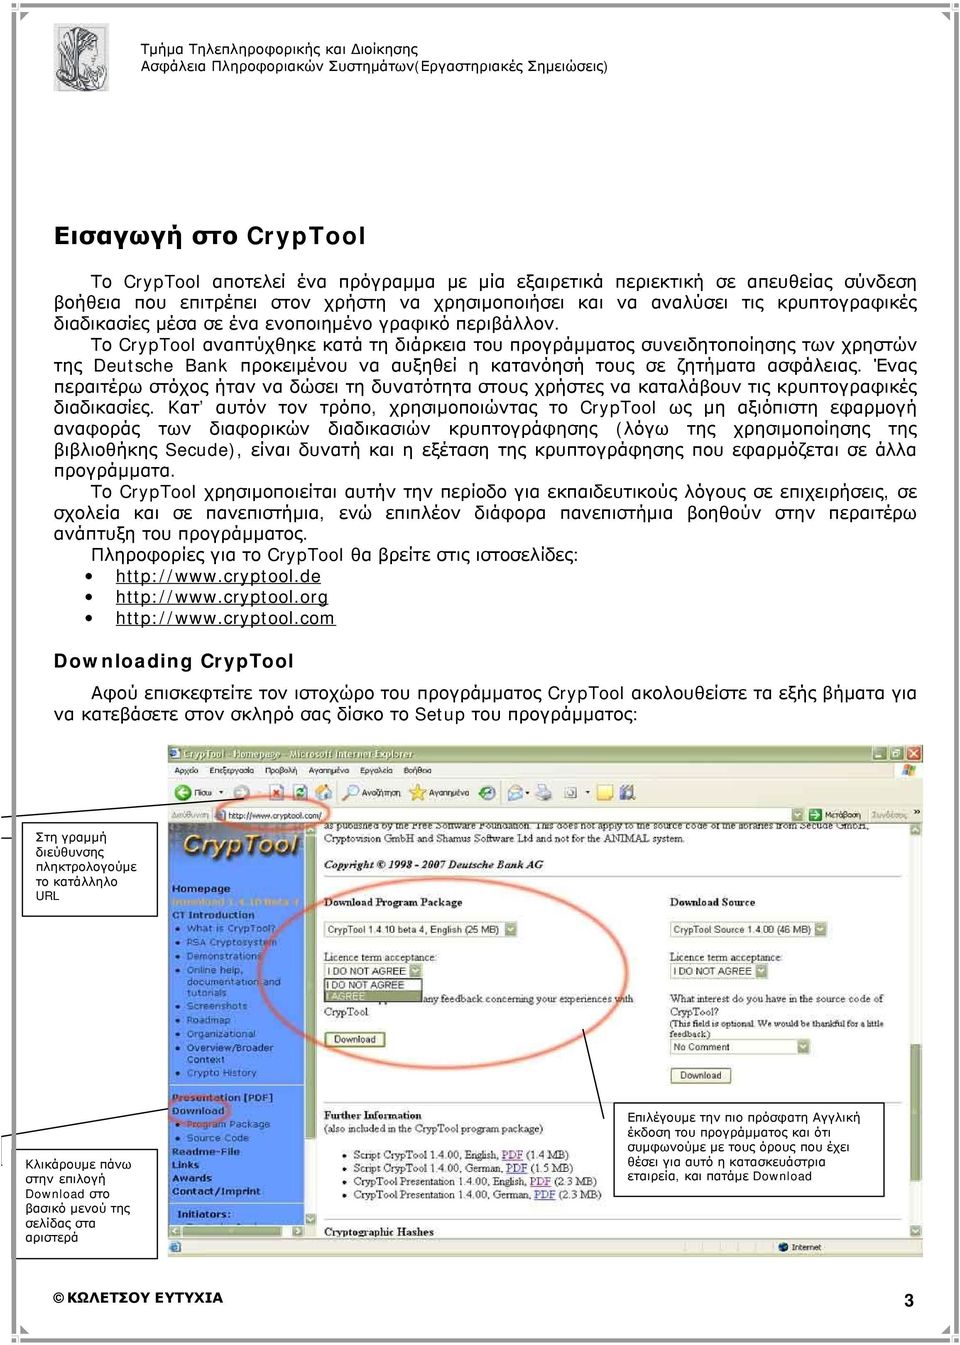 Το CrypTool αναπτύχθηκε κατά τη διάρκεια του προγράμματος συνειδητοποίησης των χρηστών της Deutsche Bank προκειμένου να αυξηθεί η κατανόησή τους σε ζητήματα ασφάλειας.